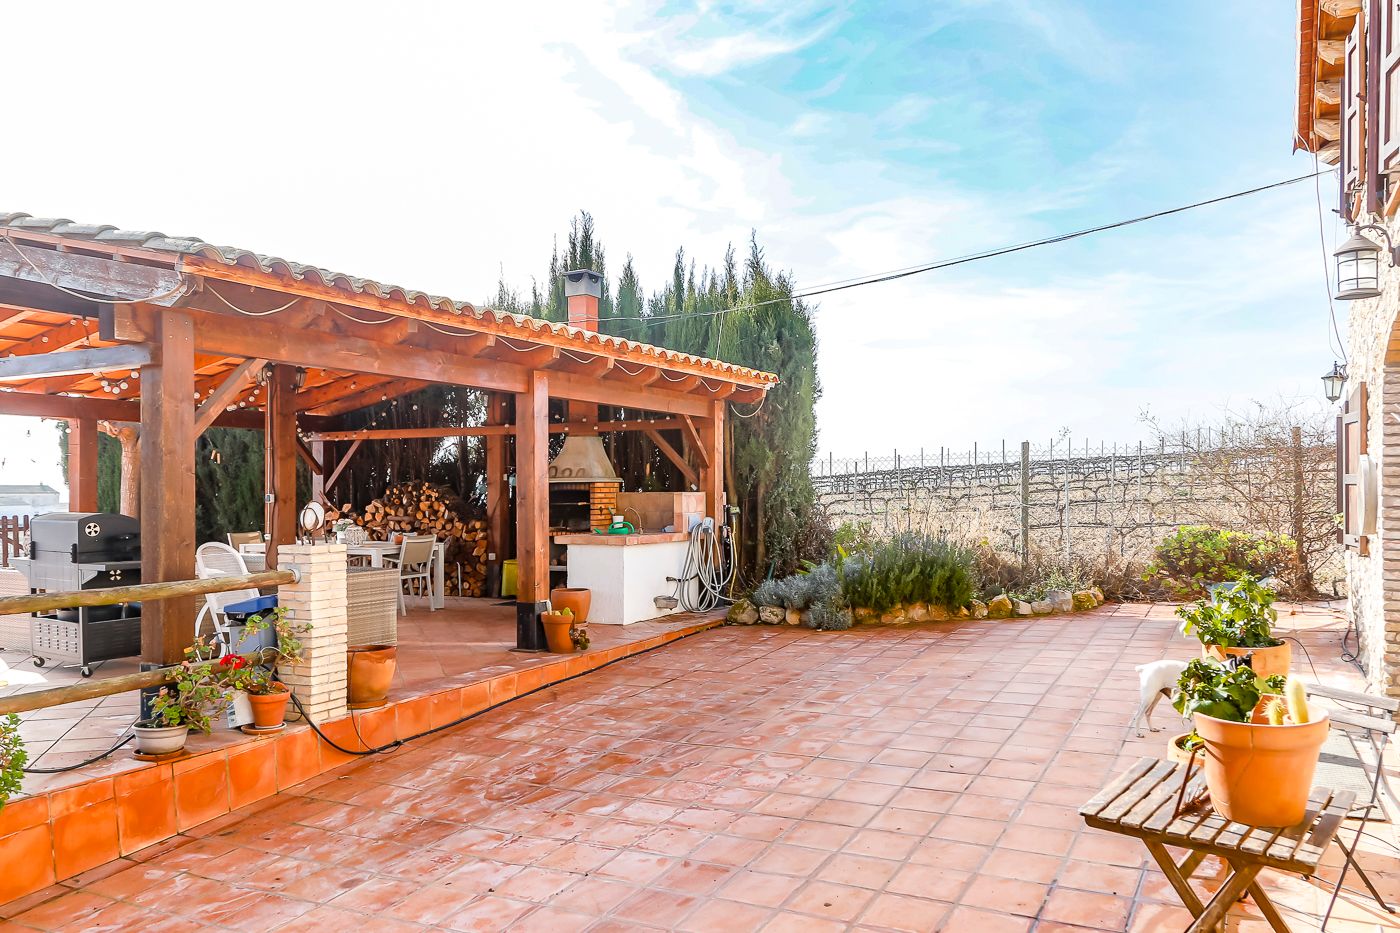 Spektakulär renoviertes Bauernhaus in der Nähe von Vilafranca del Penedès